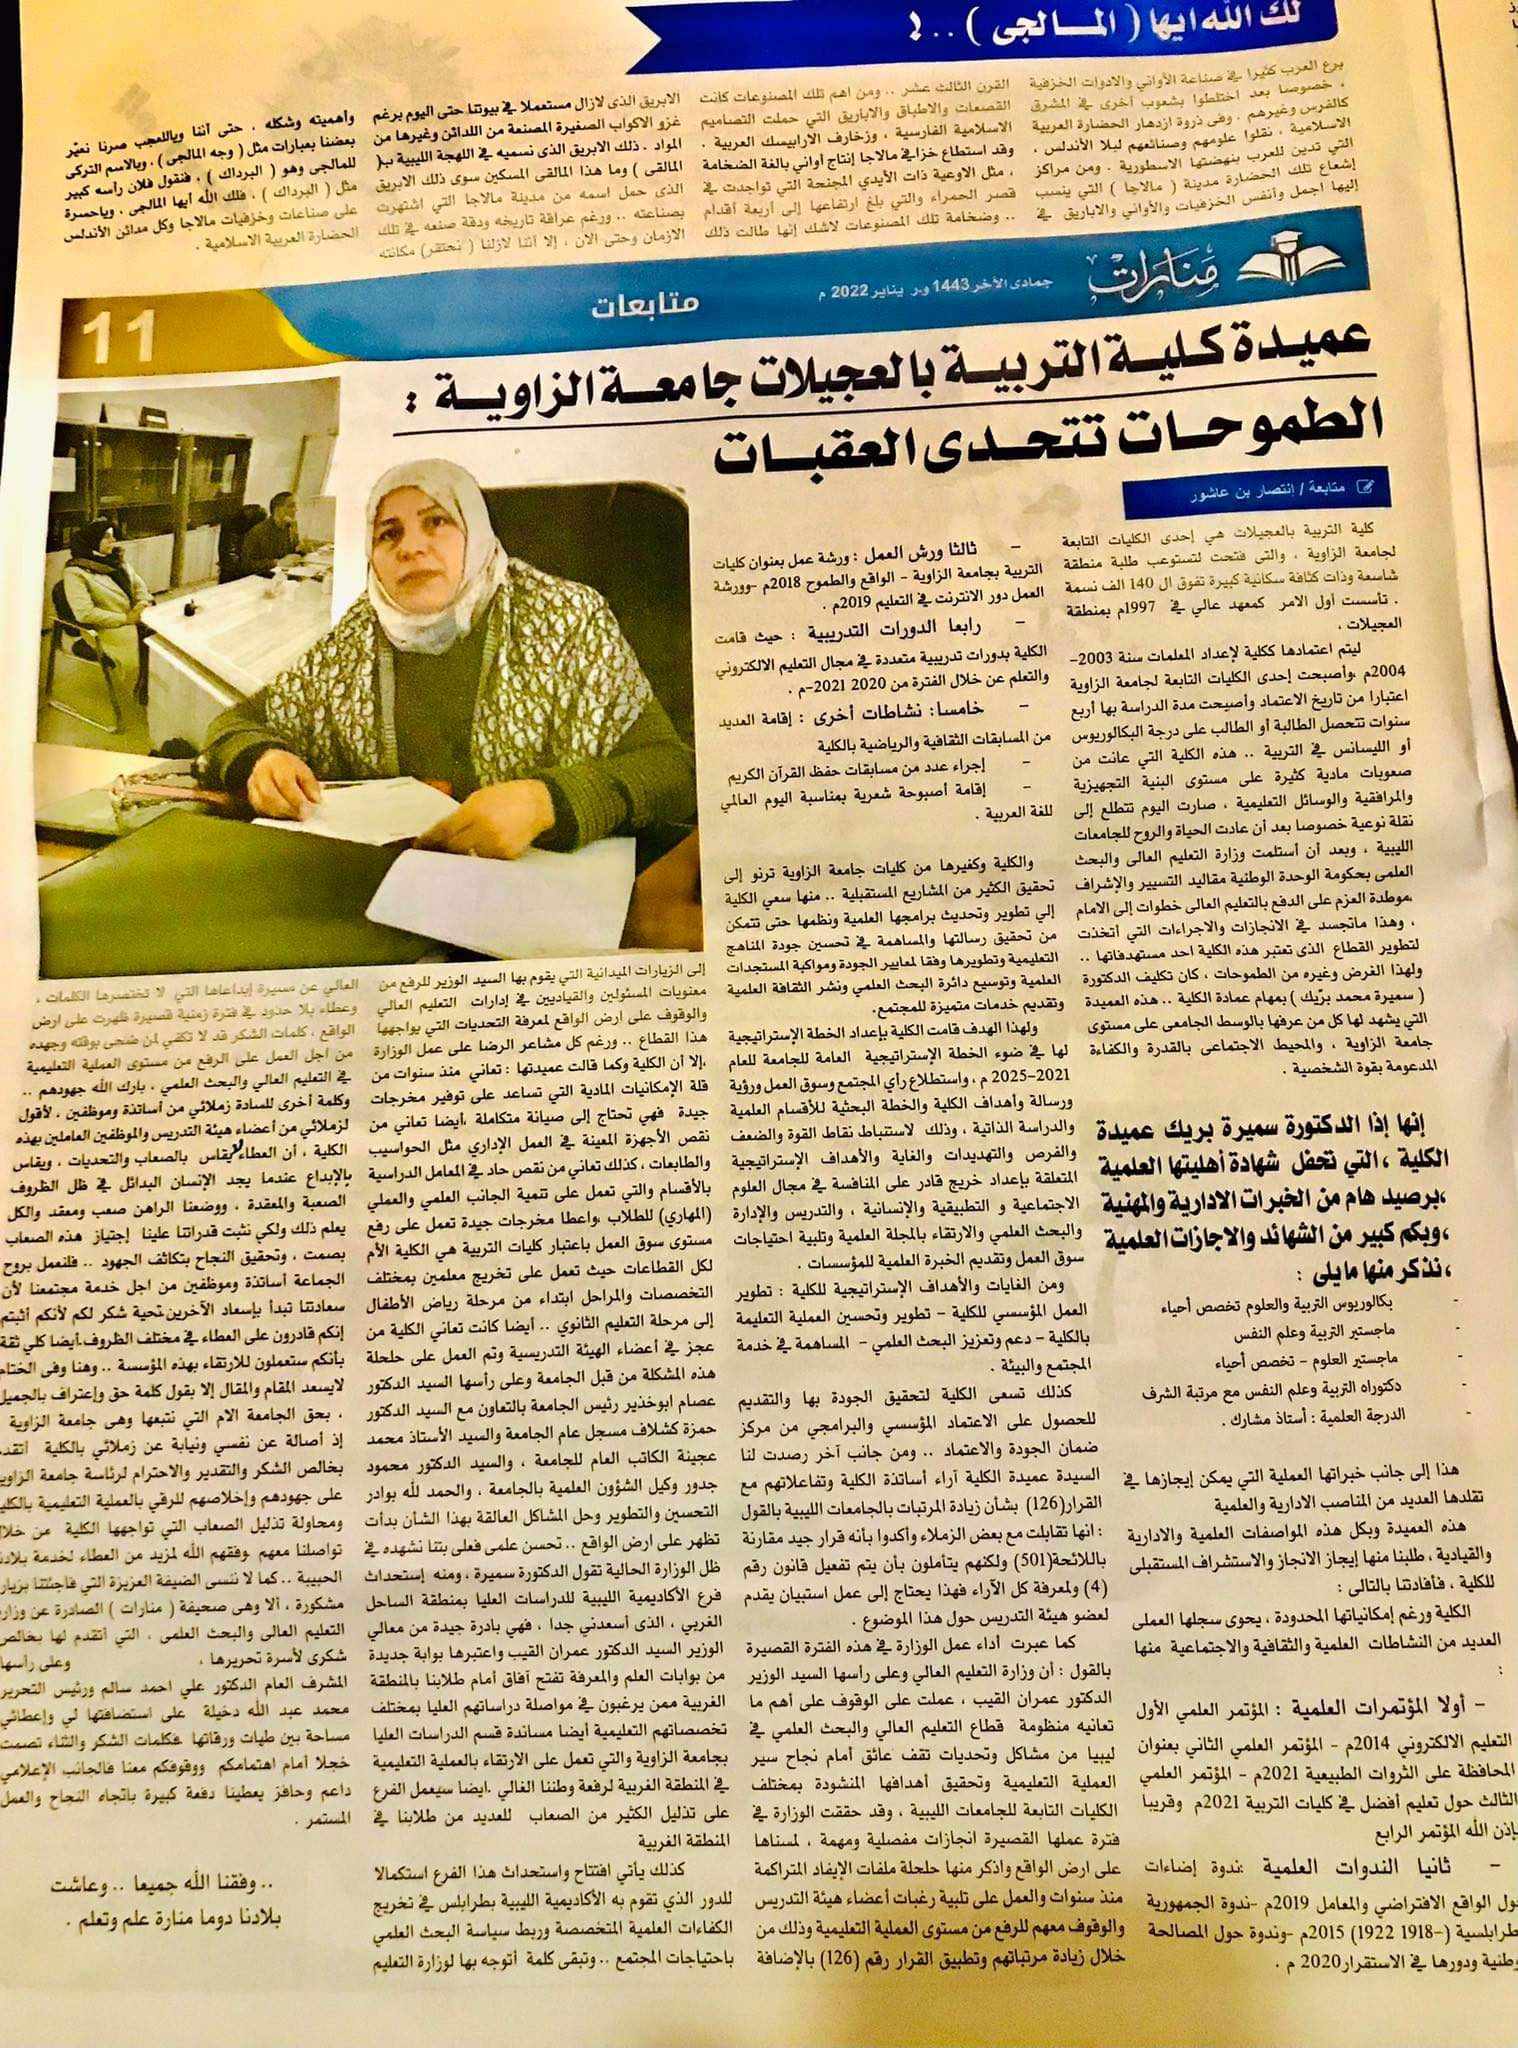 اللقاء الصحفي لعميدة كلية التربية العجيلات الدكتورة سميرة محمد بريك بجريدة منارات